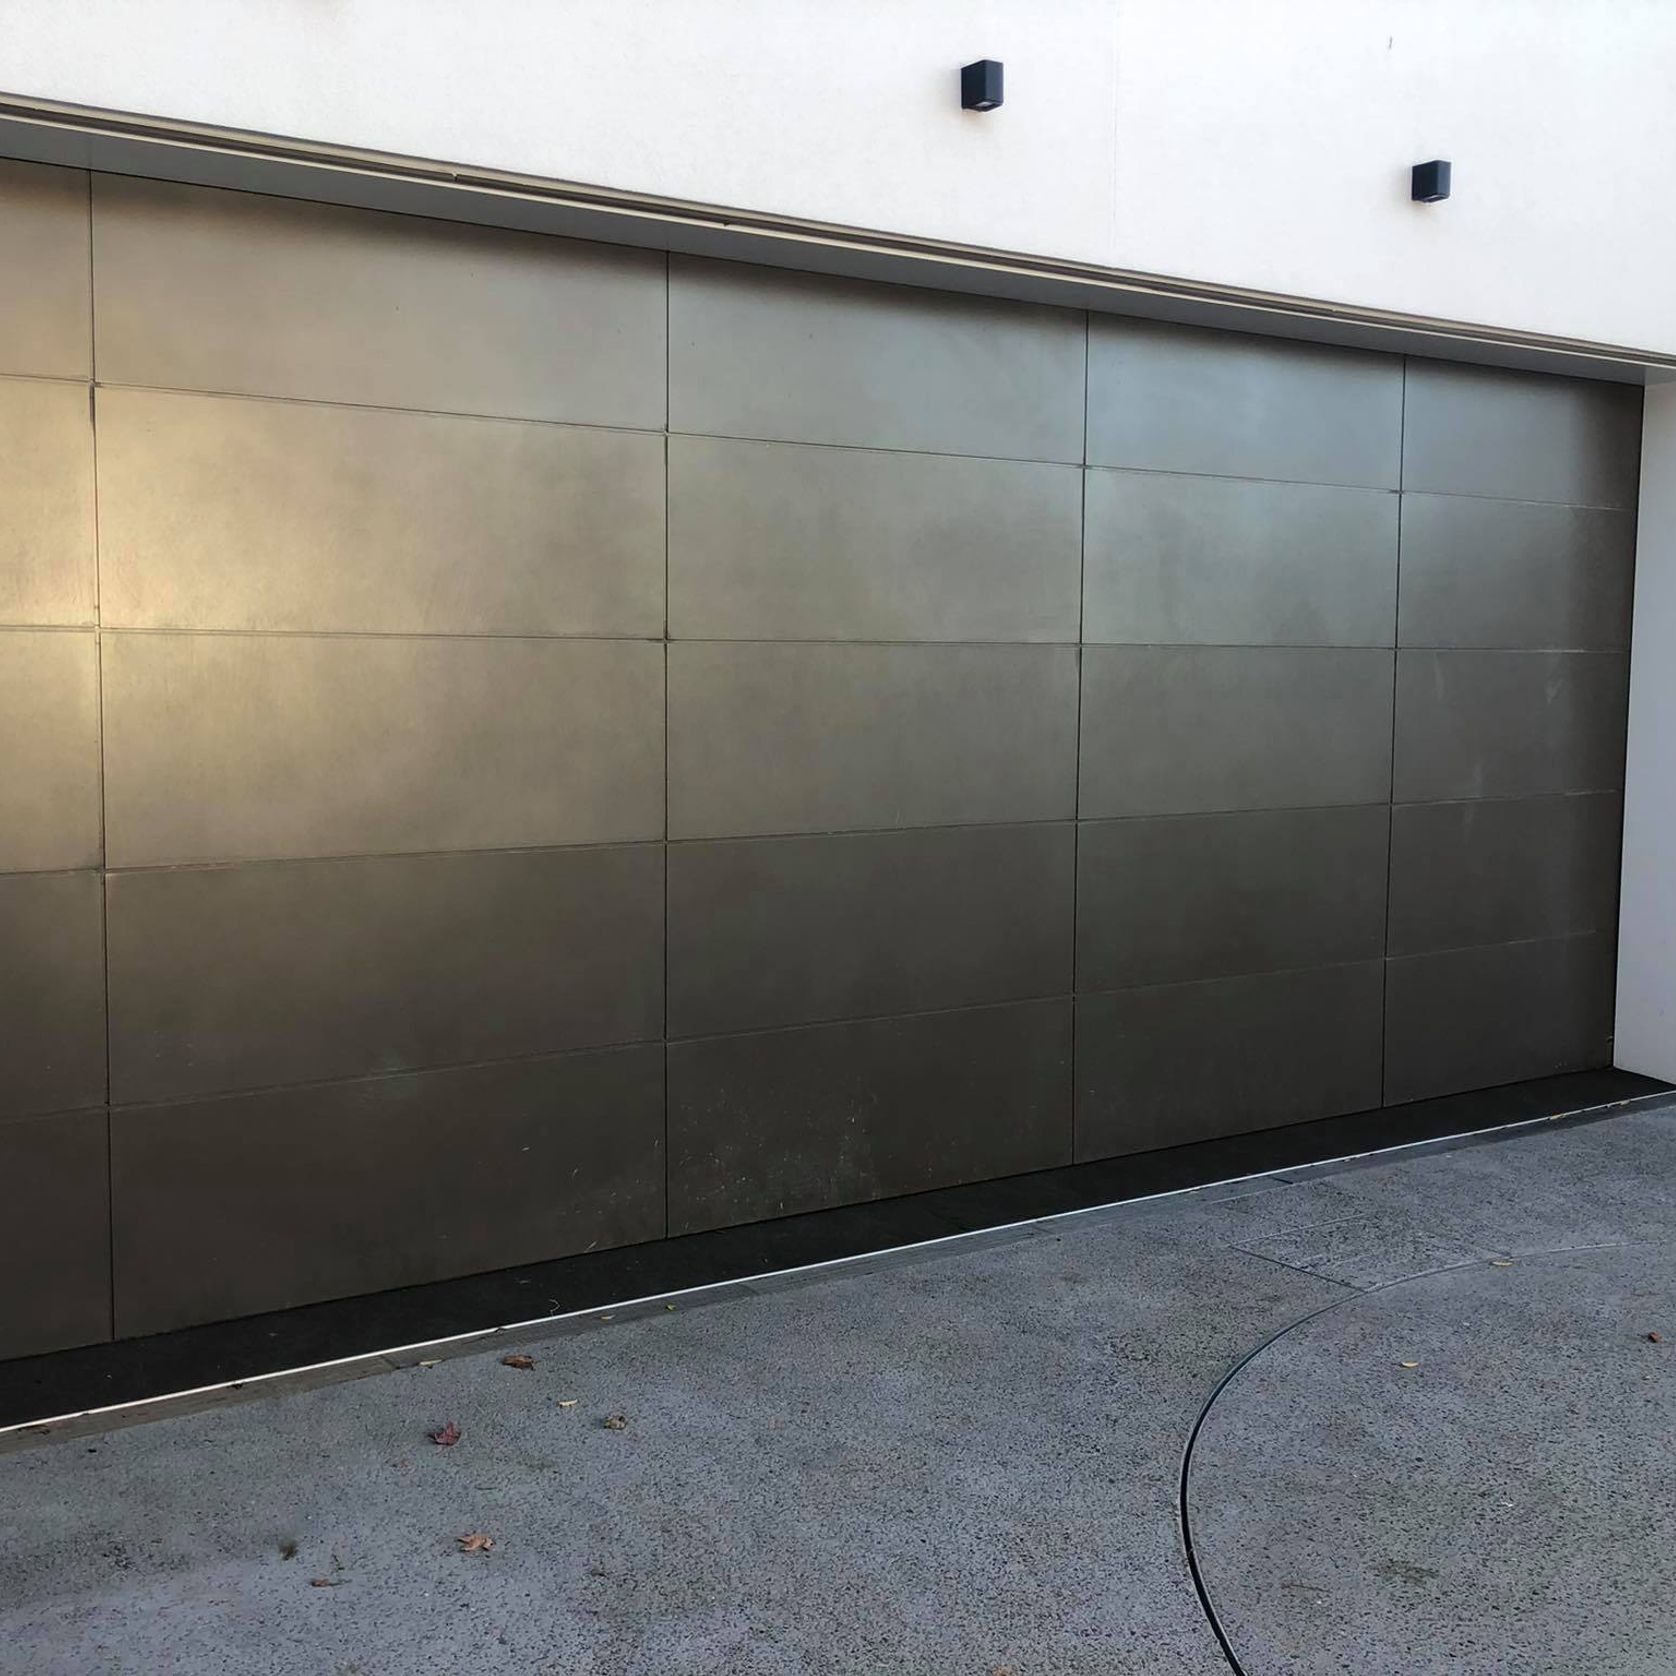 Oversize Three Car Garage Door gallery detail image